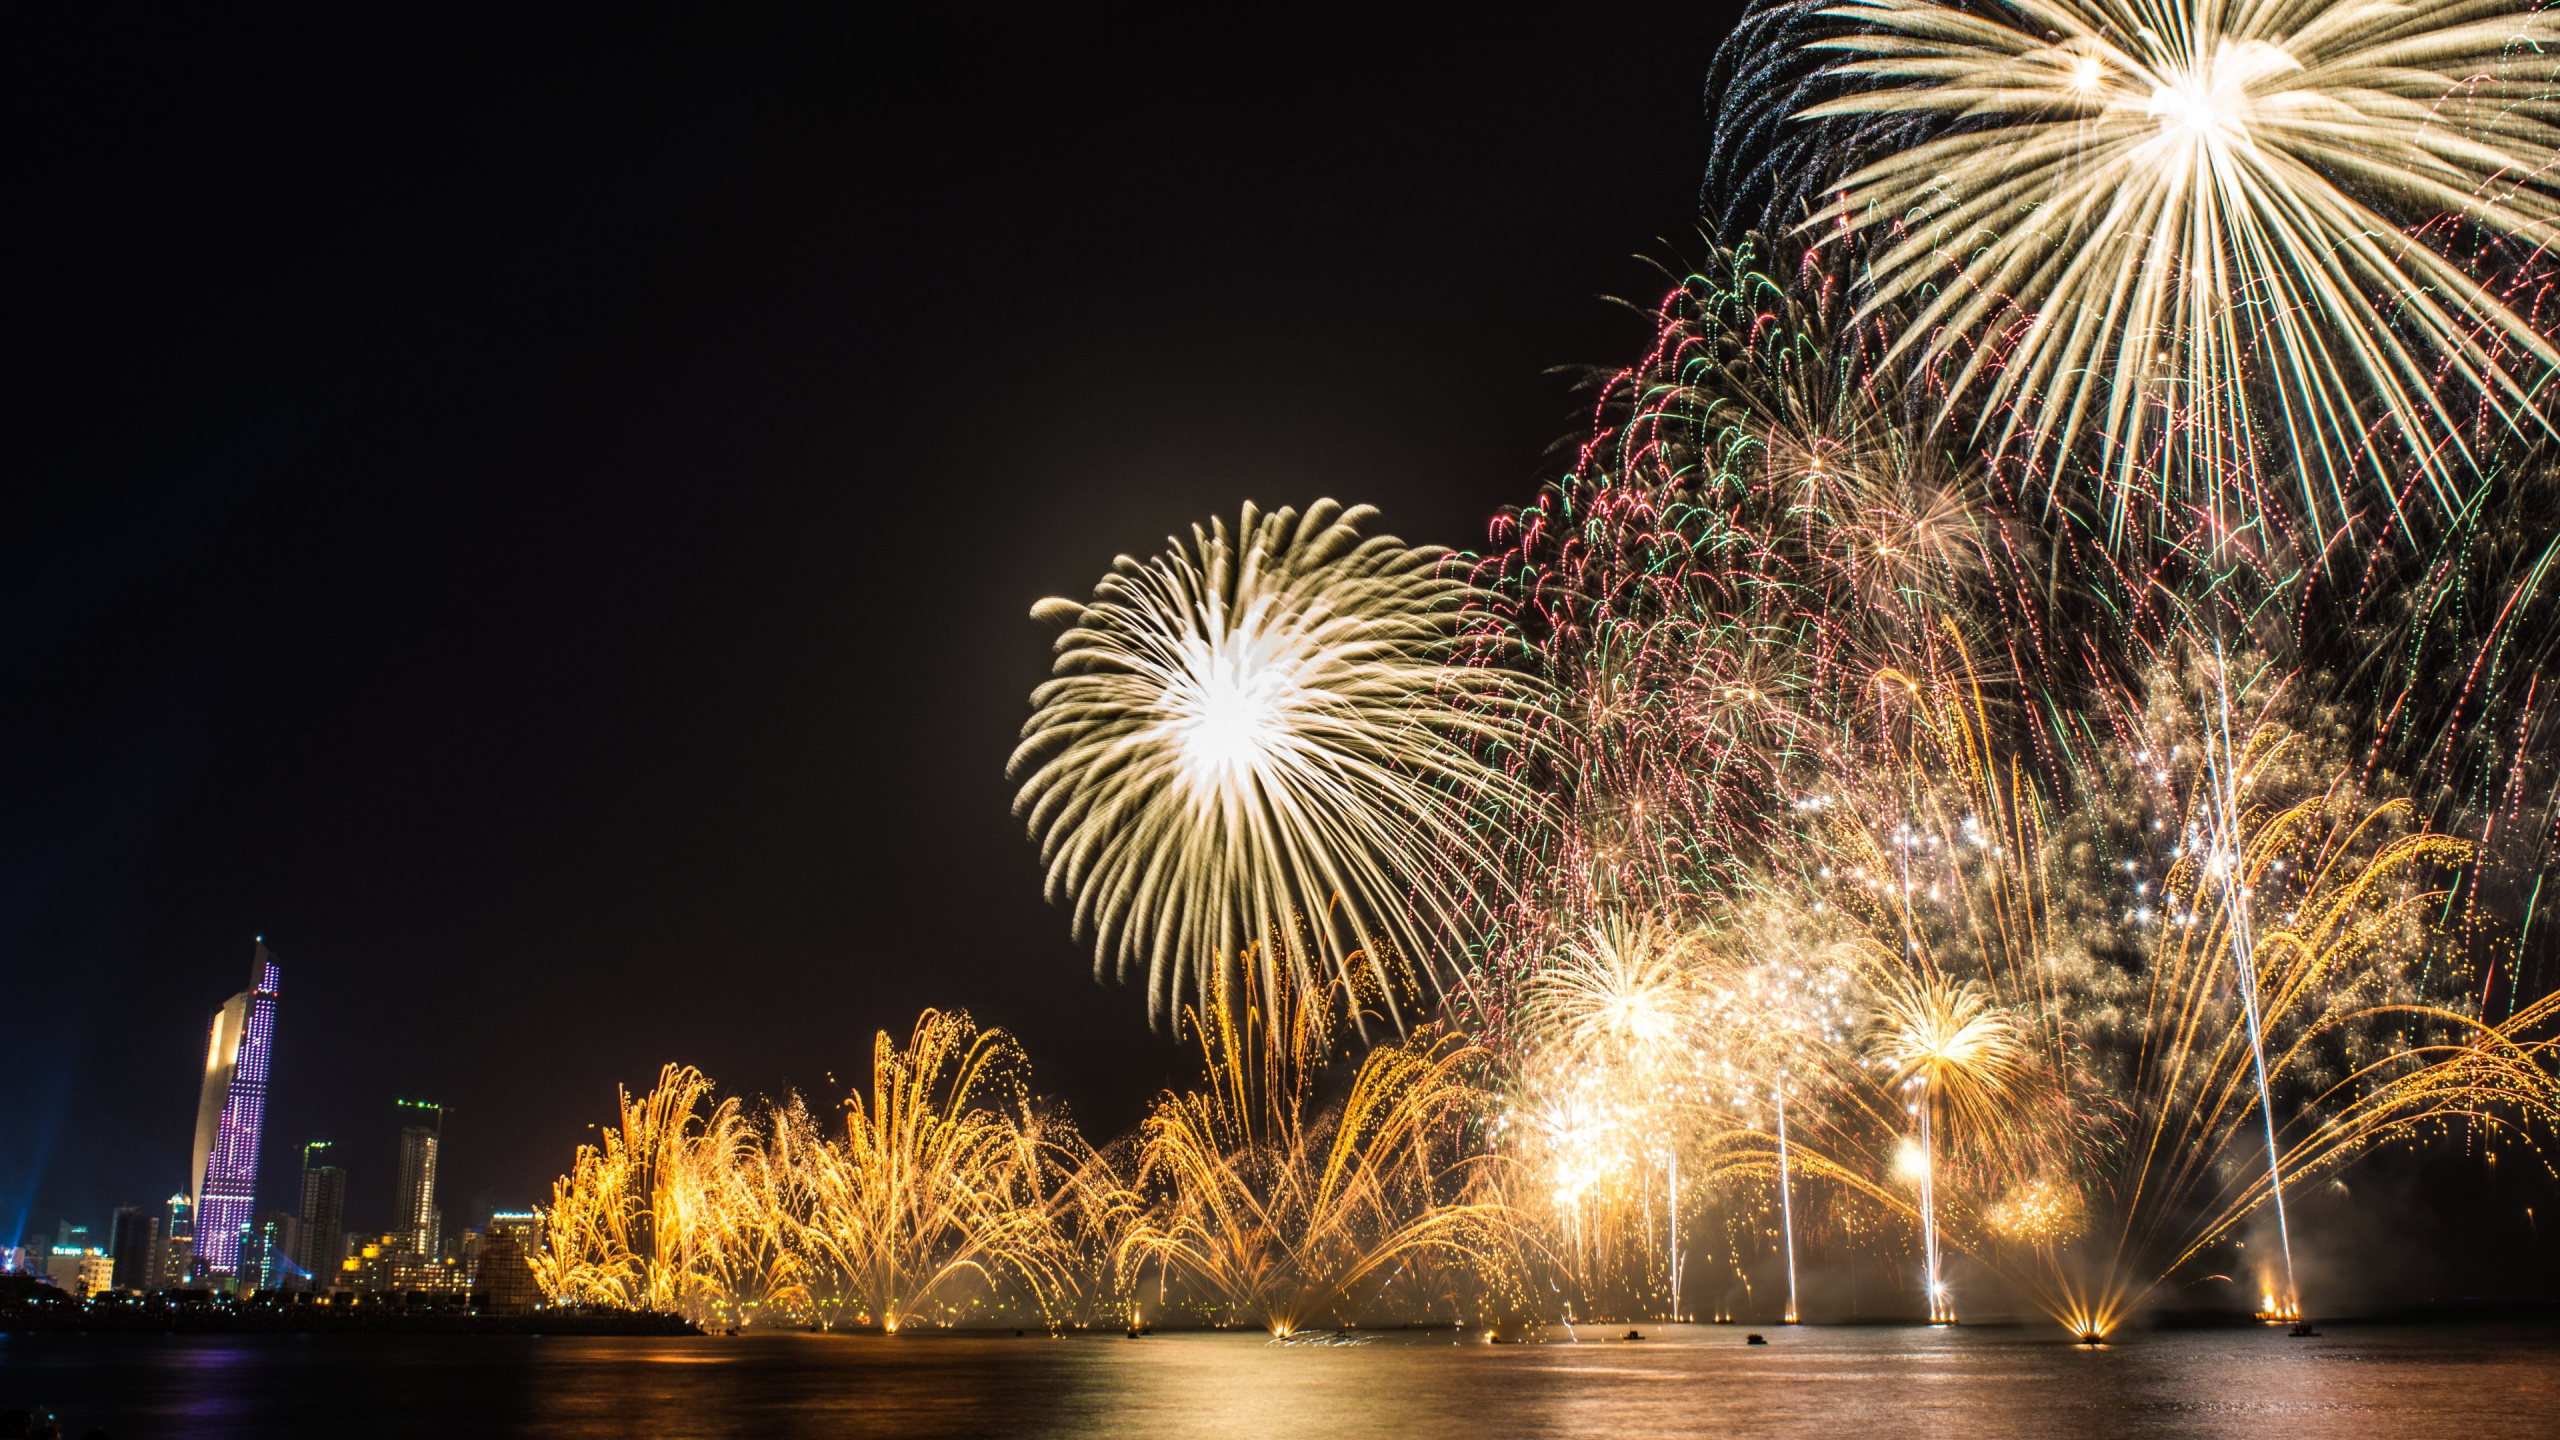 Feuerwerk, Neujahr, Nacht, Veranstaltung, Silvester. Wallpaper in 2560x1440 Resolution